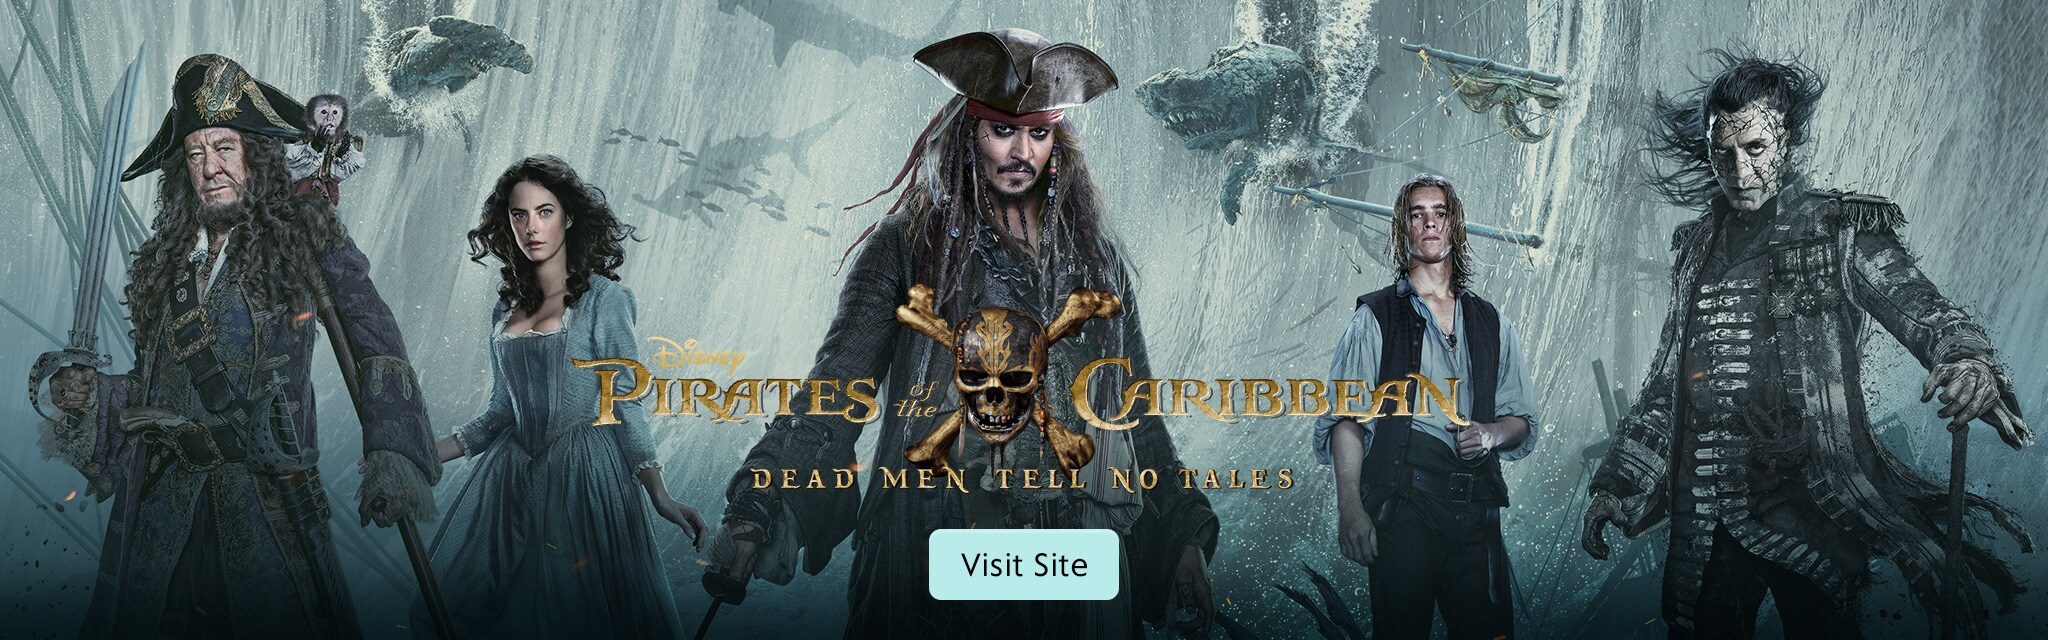 pirates 2005 online movie